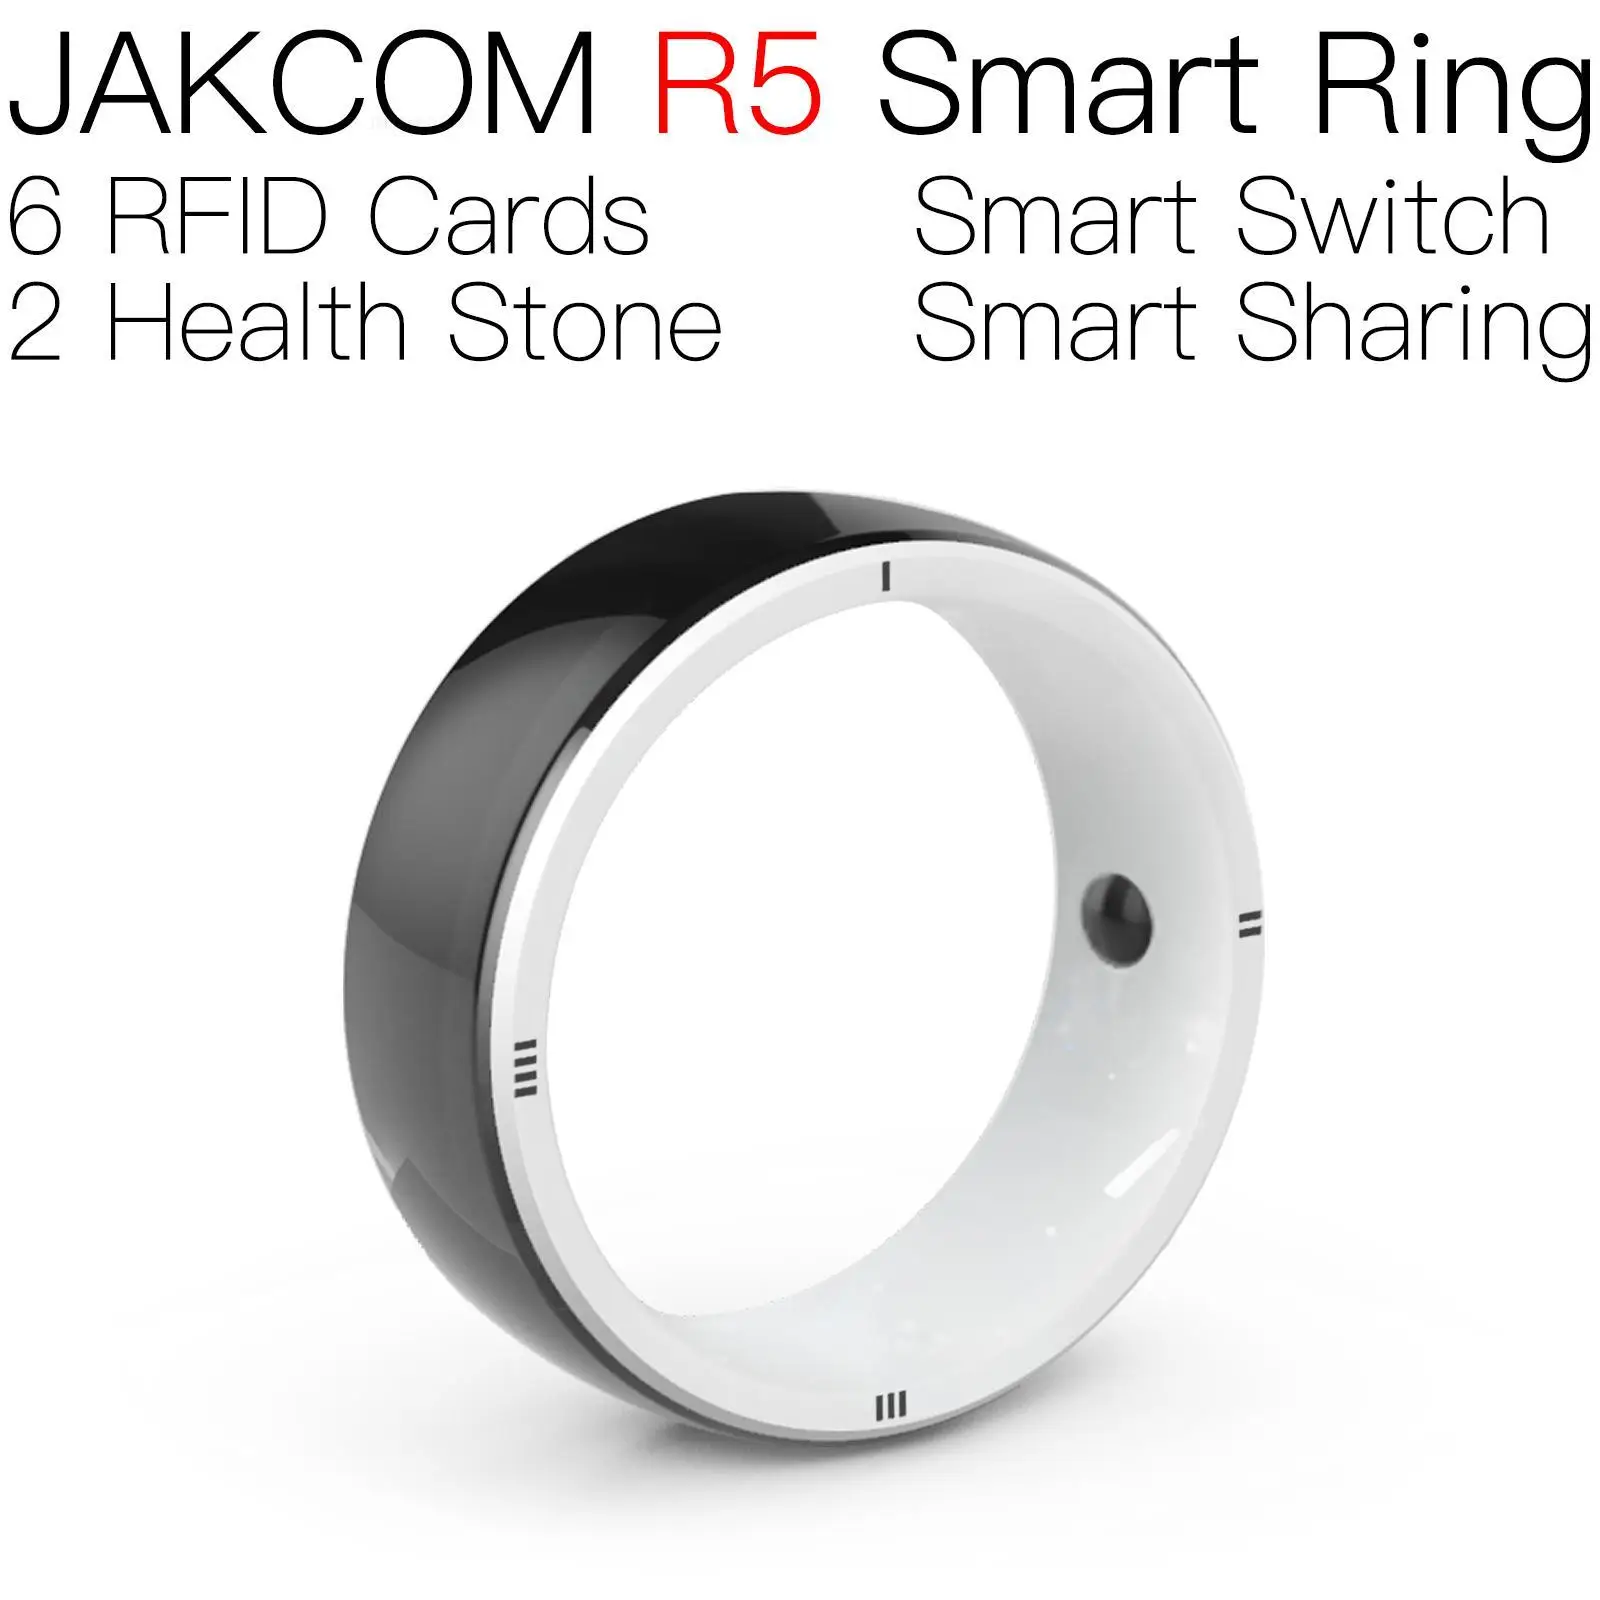 

Смарт-кольцо JAKCOM R5 для мужчин и женщин, смарт-метка, rfid, hf, Дубликатор, Обложка, наклейка, Франция, бесплатный программатор, ярлыки, идентичный номер